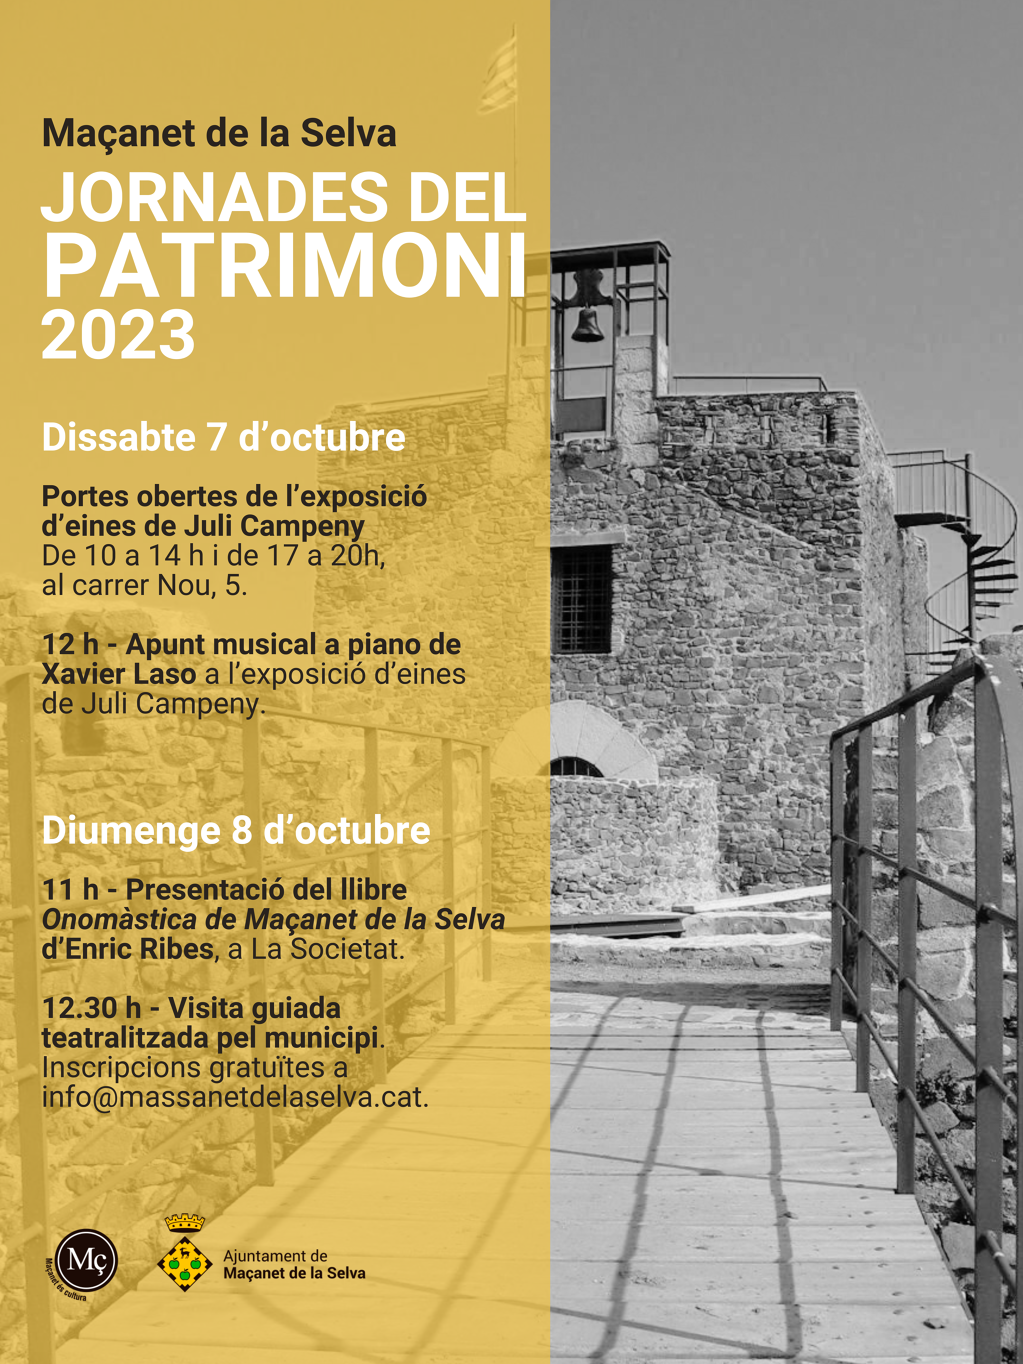 Jornades del patrimoni 2023 - jornades-del-patrimoni-2023.png